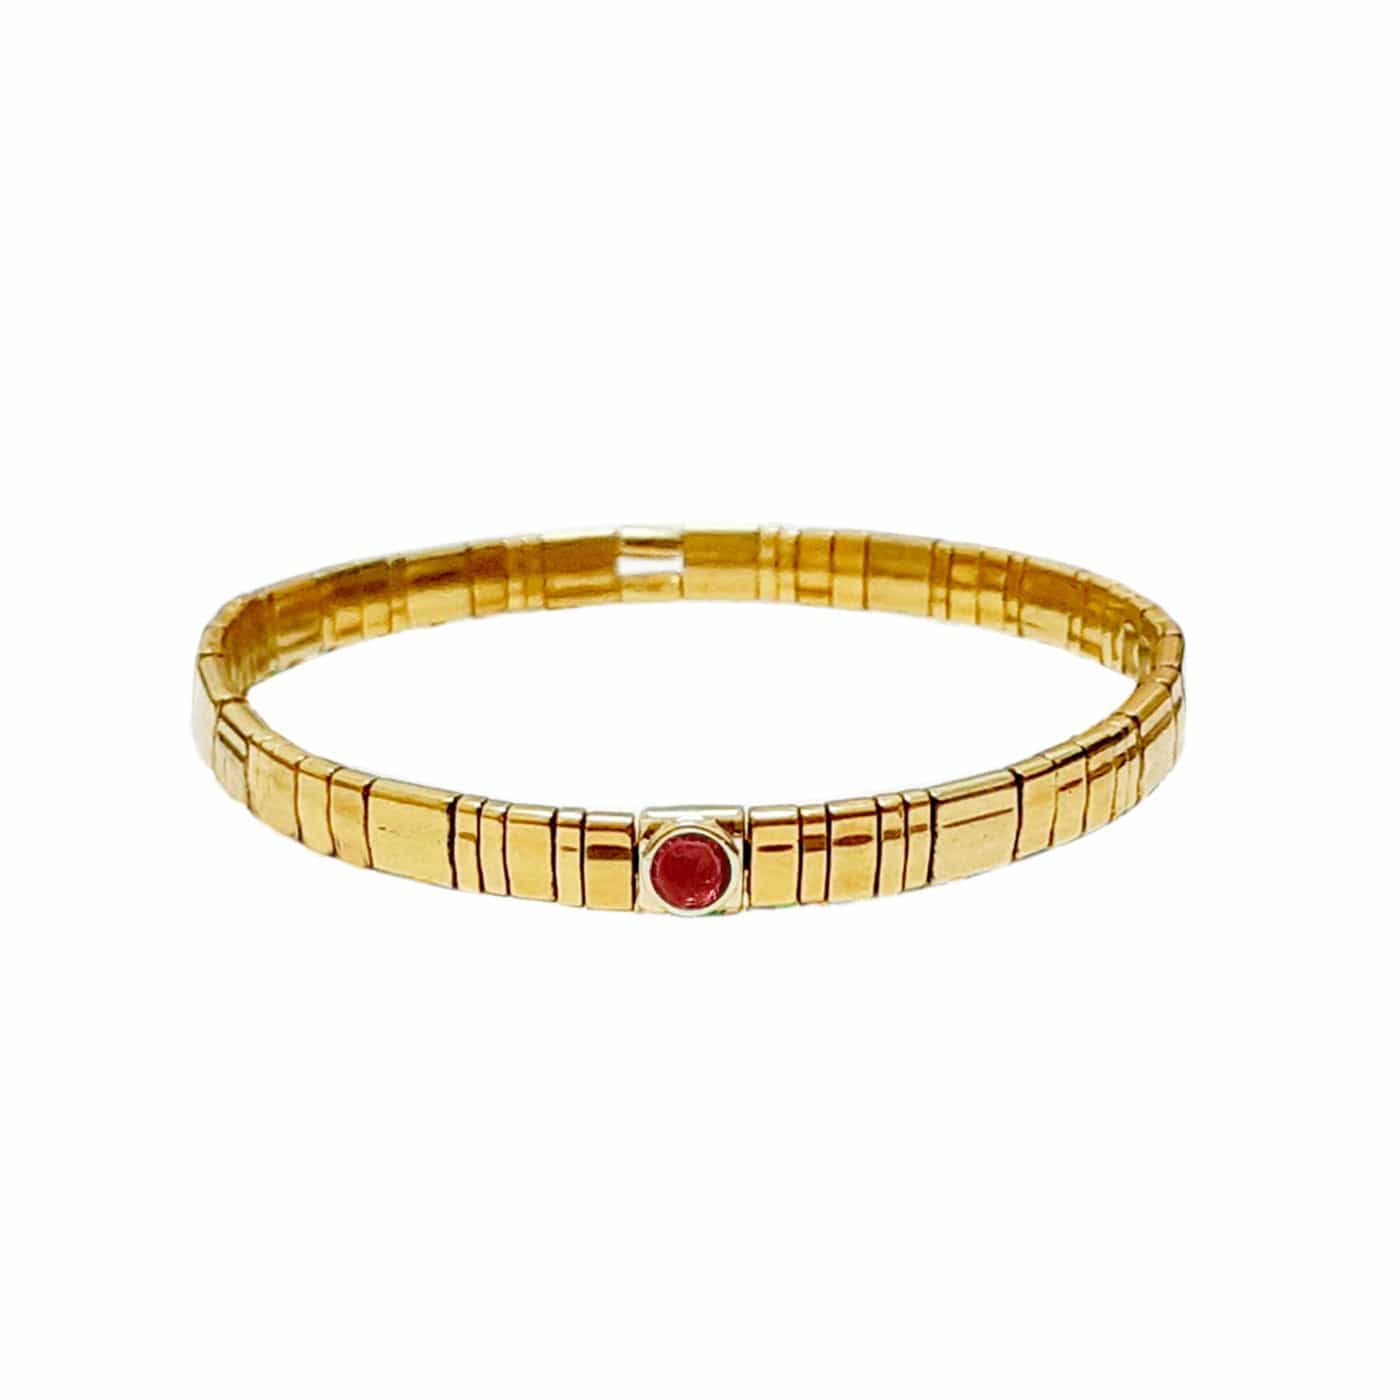 TAI JEWELRY Bracelet Red Gold Tila Bead Bracelet With Single Stone